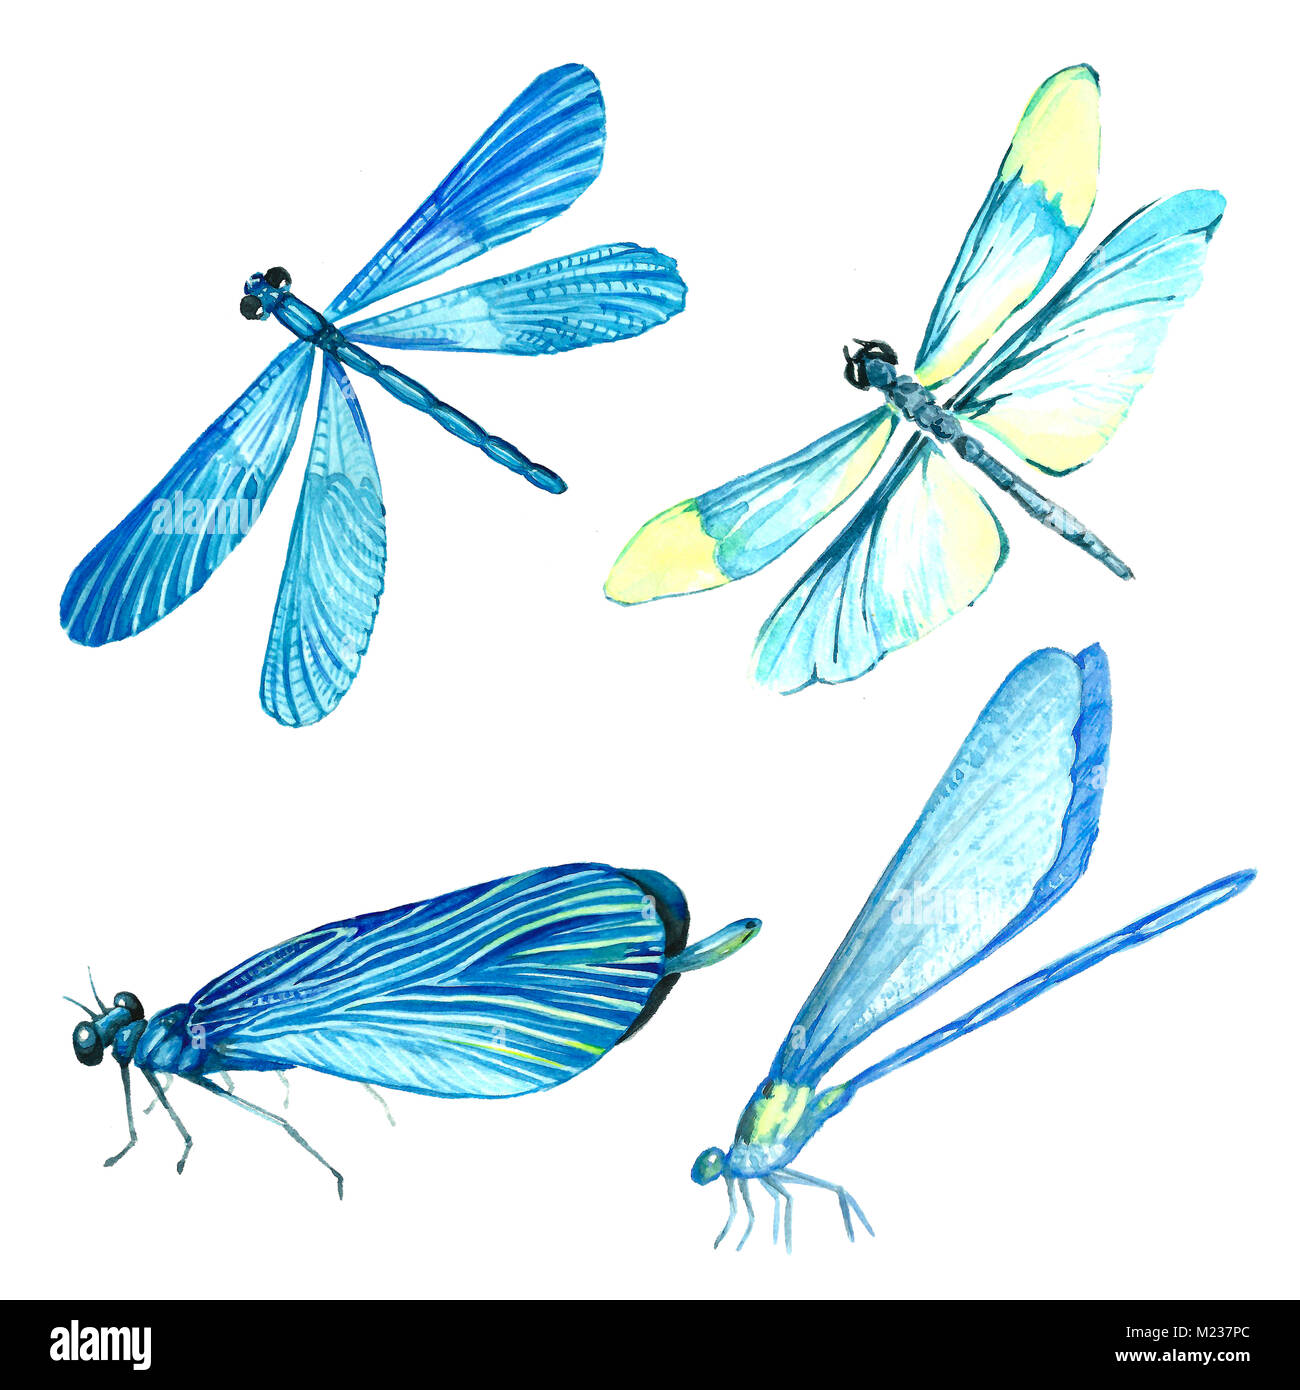 Aquarelle collection de libellule bleue illustrations. Image isolée d'un insecte sur un fond blanc. Tableau peint à la main d'un animal. Banque D'Images